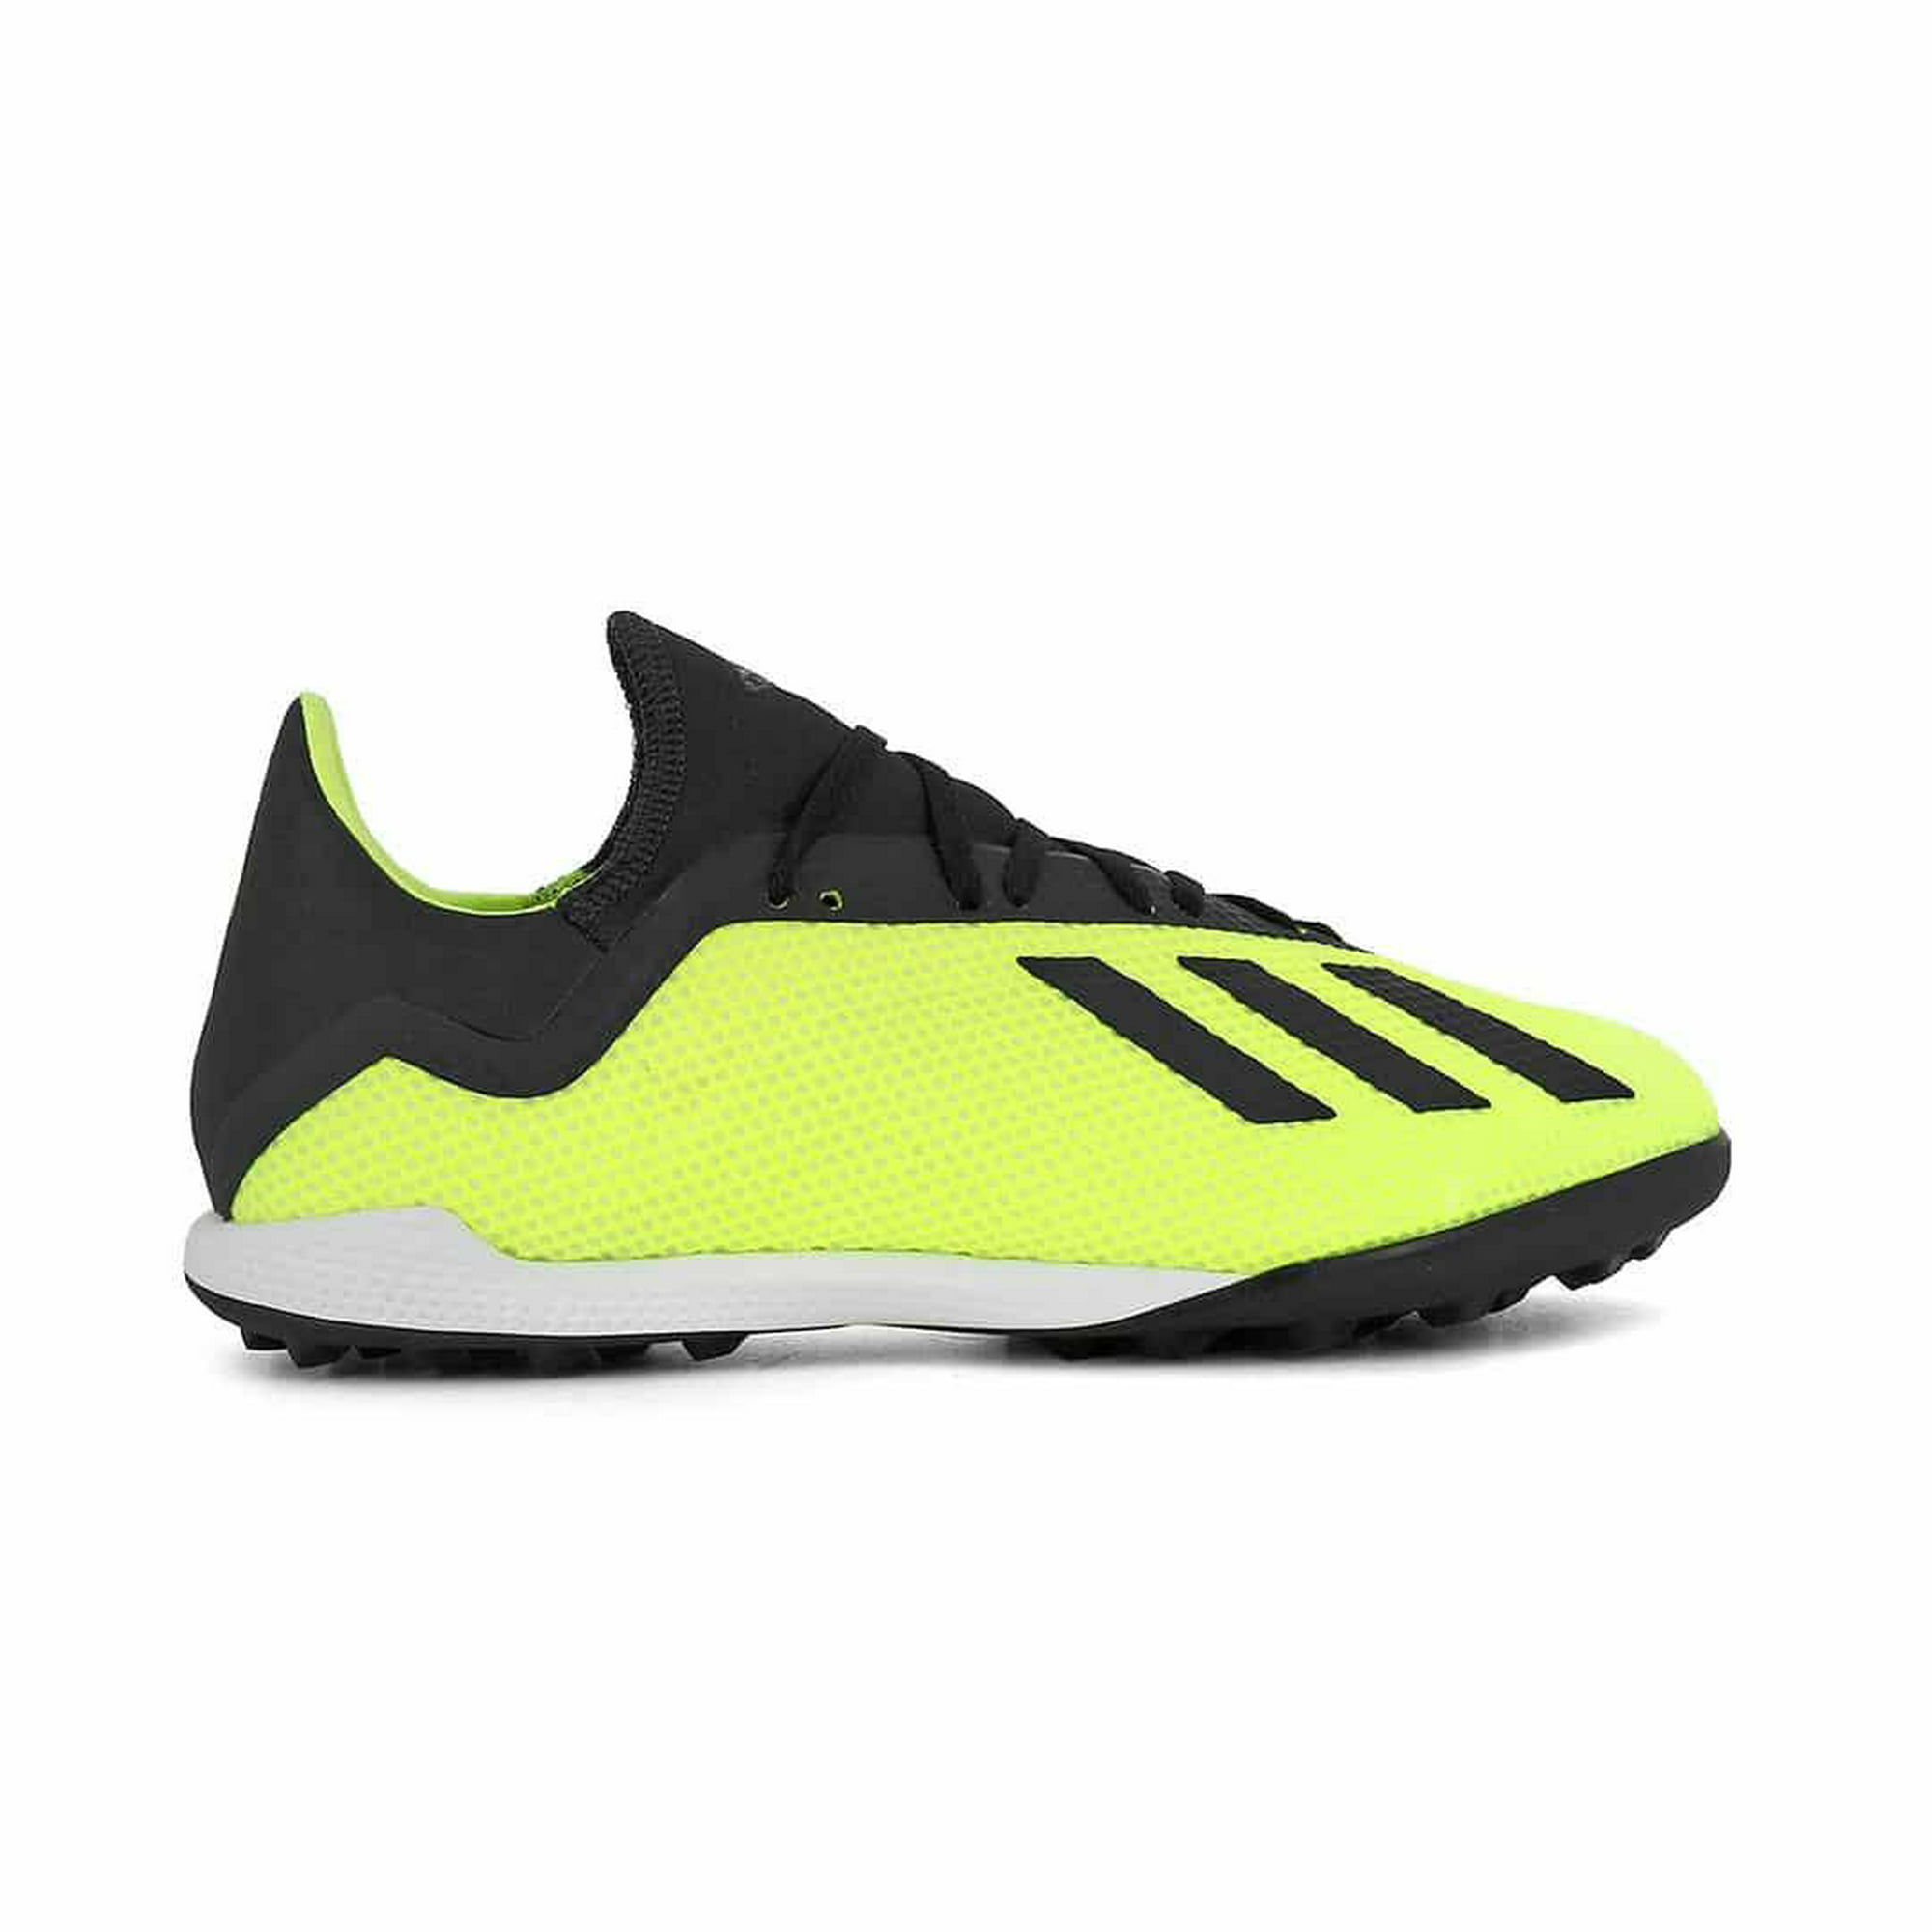 Tenis Adidas X Tango 18.3 TF Hombre Deportivo Futbol amarillo 30 Adidas DB2475 | Walmart en